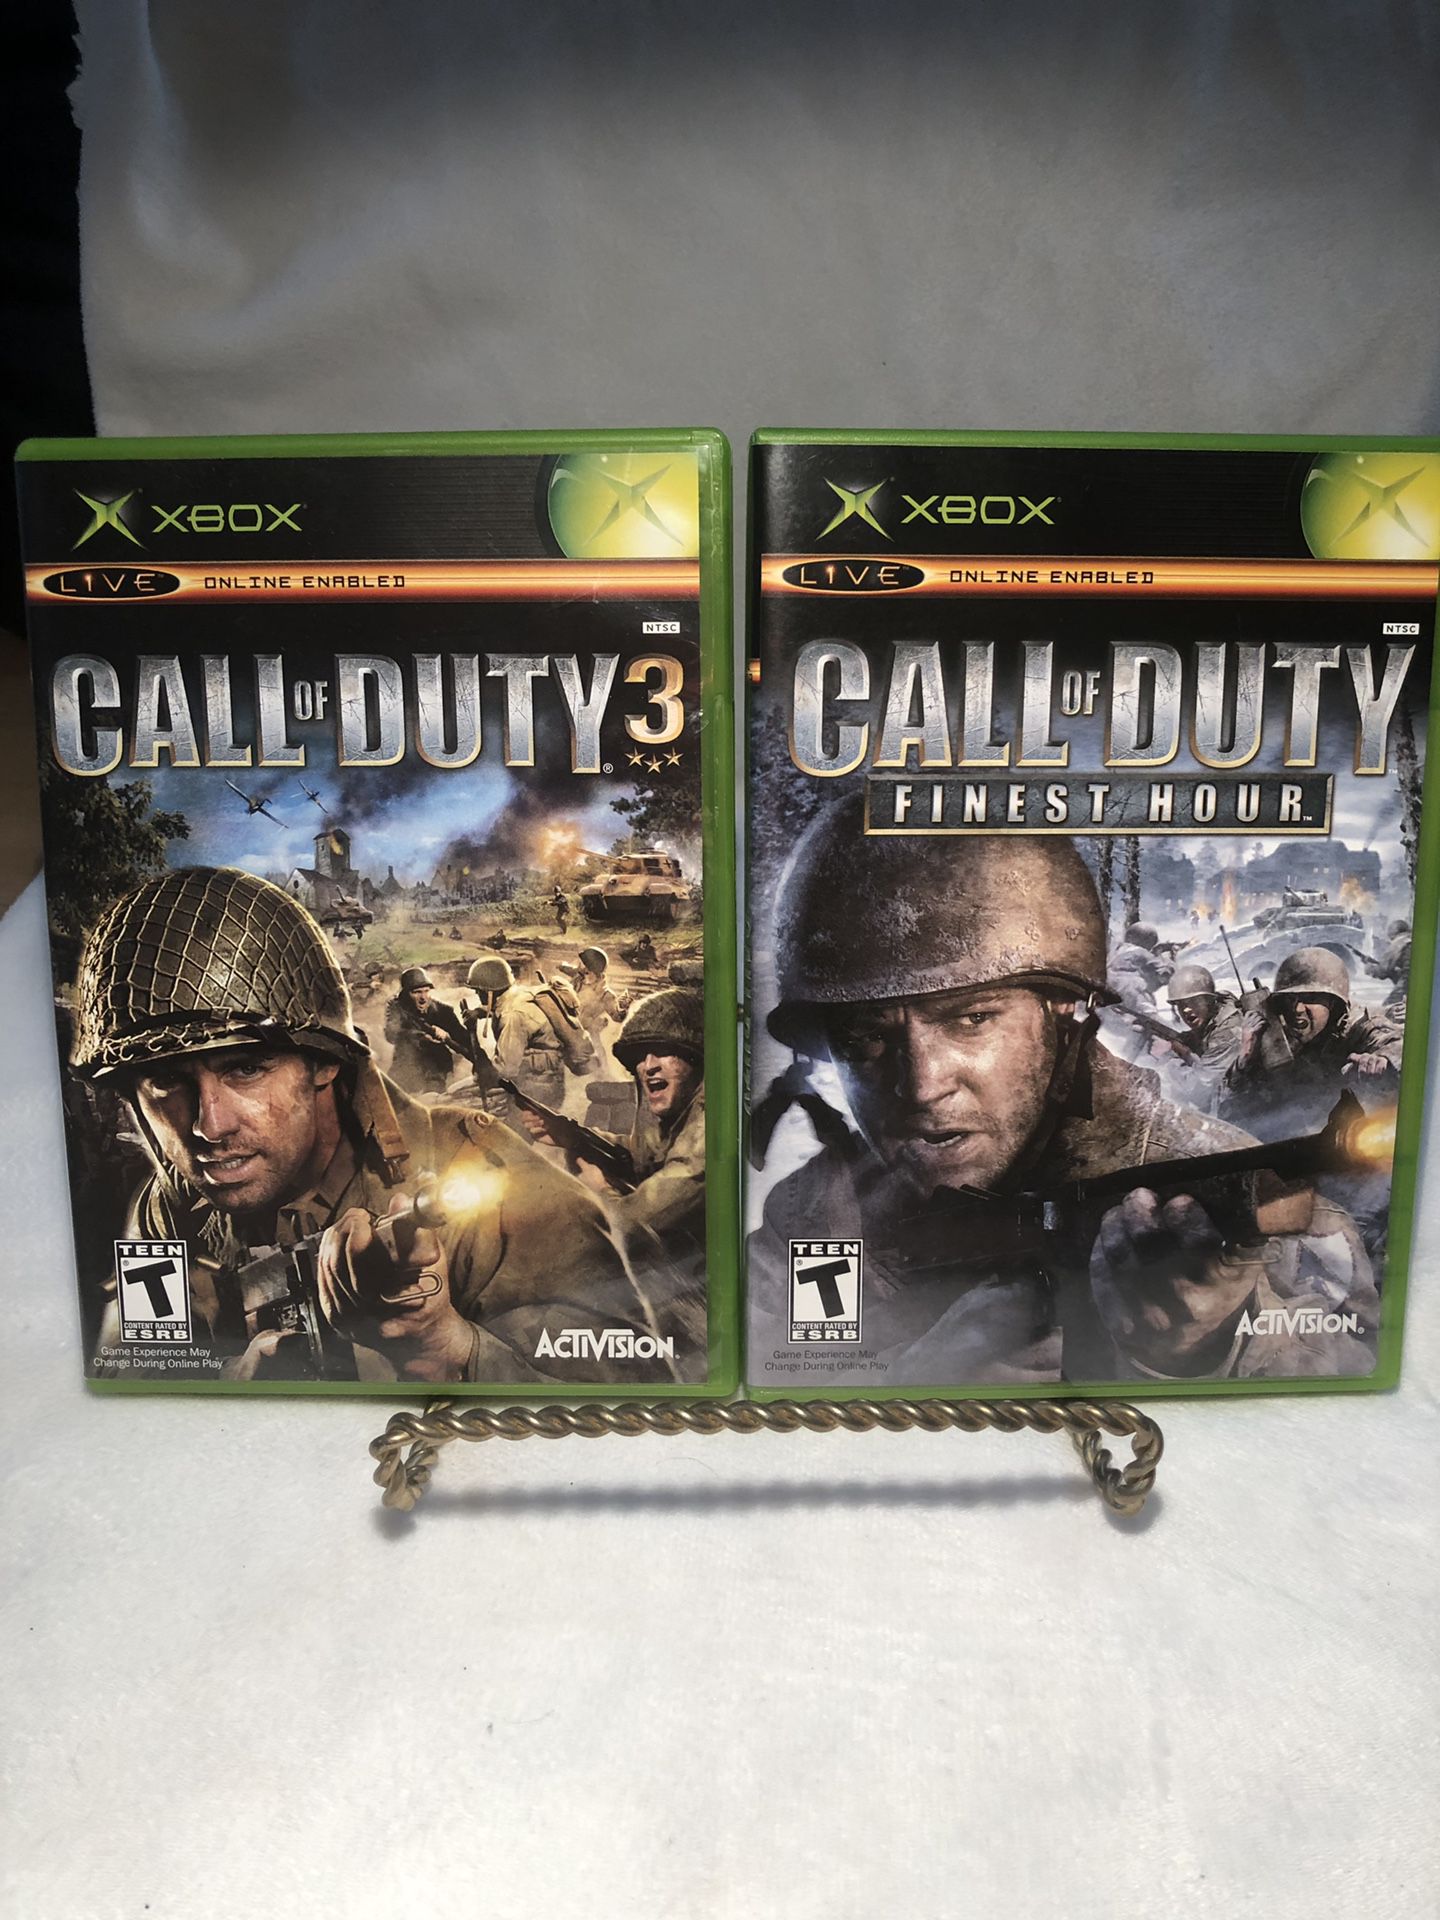 Preços baixos em Call of Duty 3 Microsoft Xbox 360 Video Games